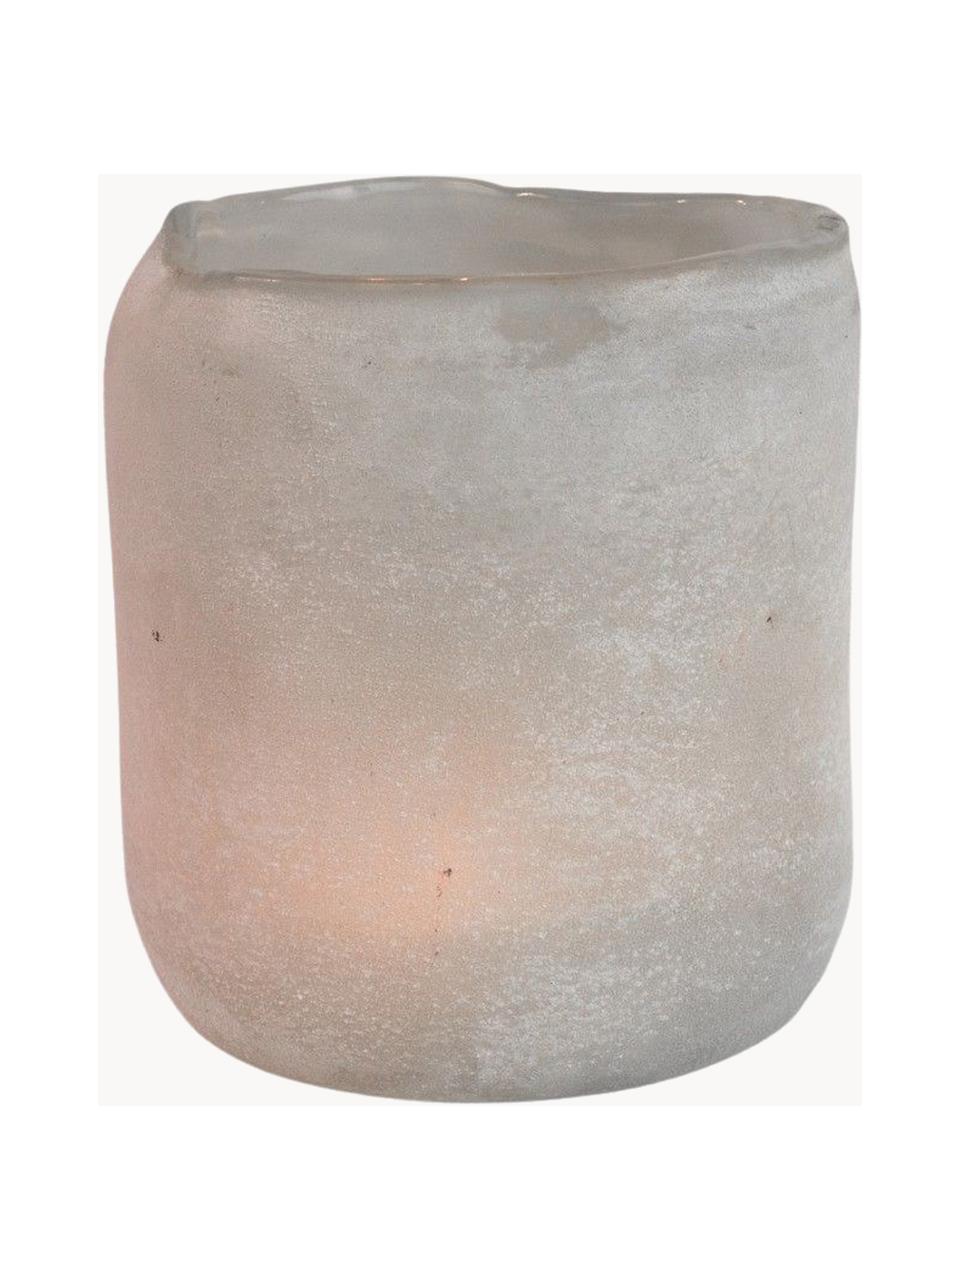 Ručně vyrobený svícen na čajovou svíčku s matným povrchem Halde, Sklo, Světle šedá, bílá, Ø 11 cm, V 12 cm